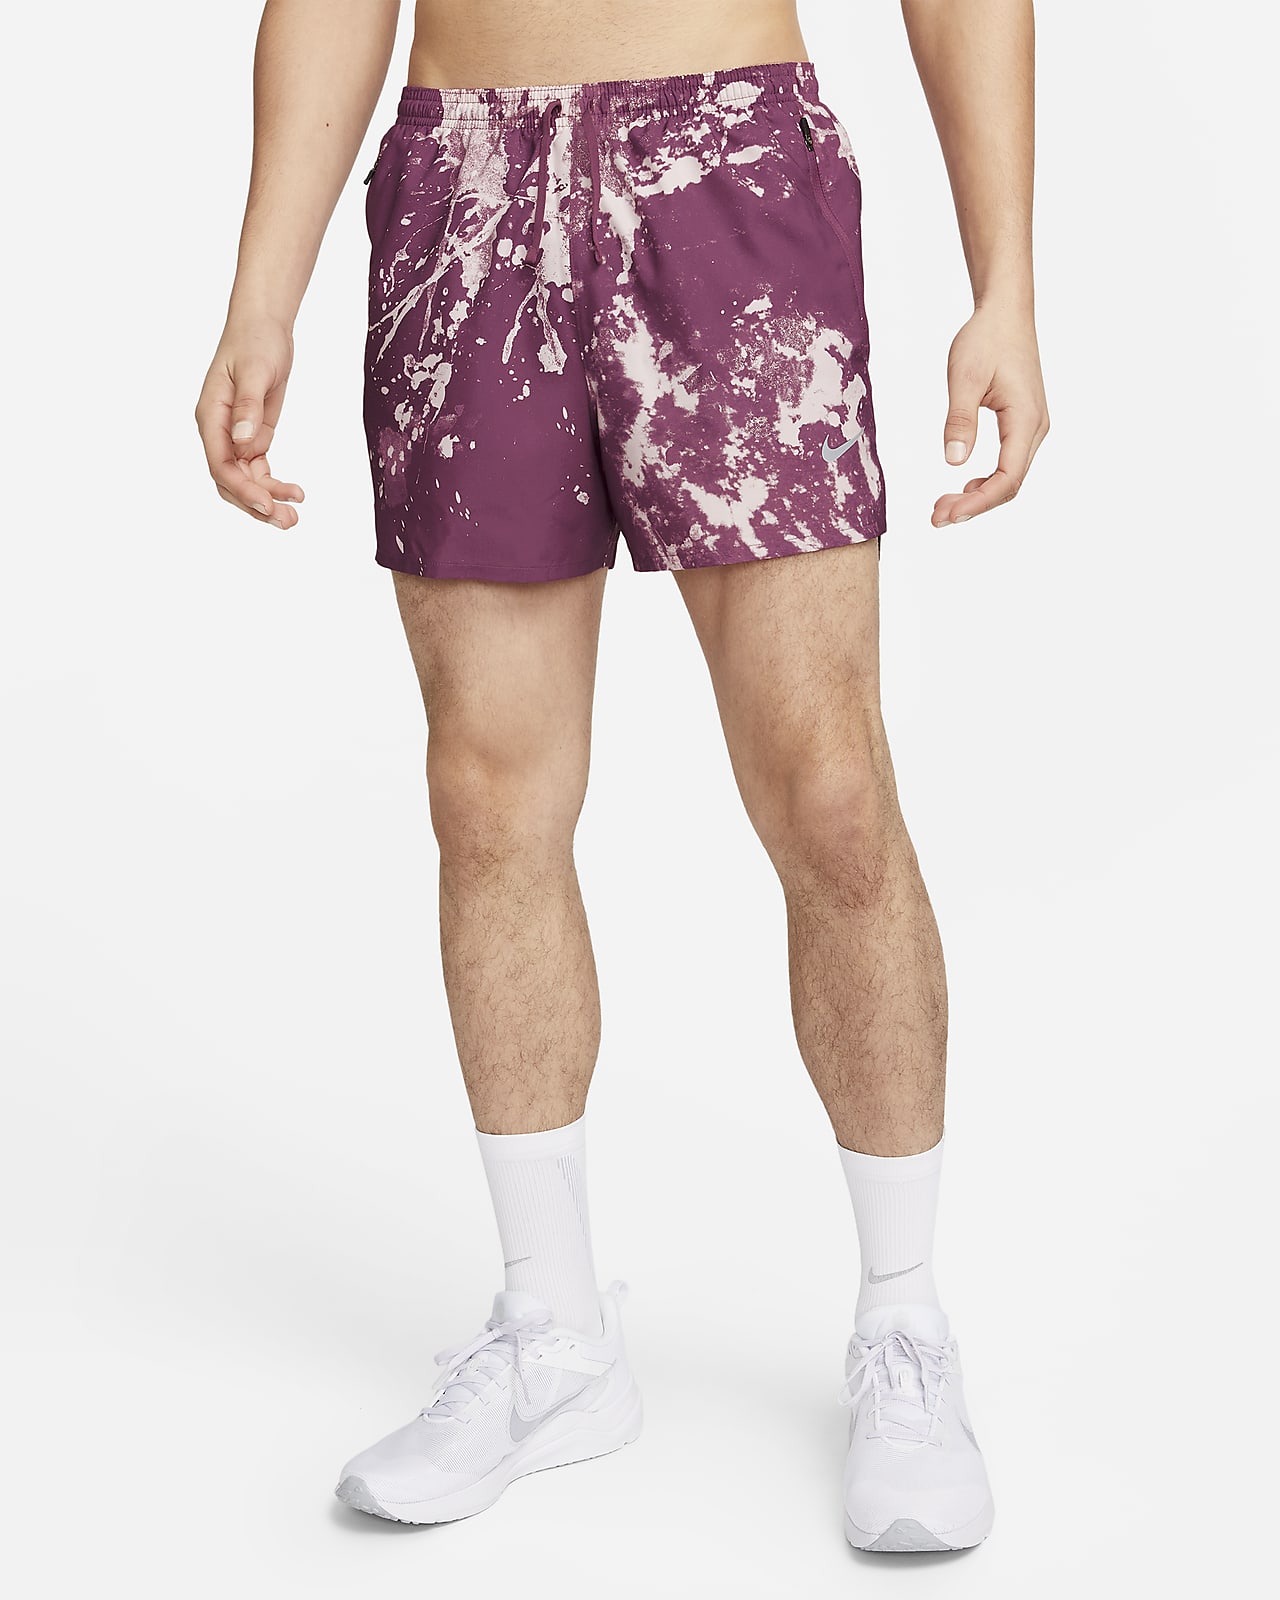 Nike Dri-FIT Run Division Stride 10 cm-es belső rövidnadrággal bélelt férfi futórövidnadrág